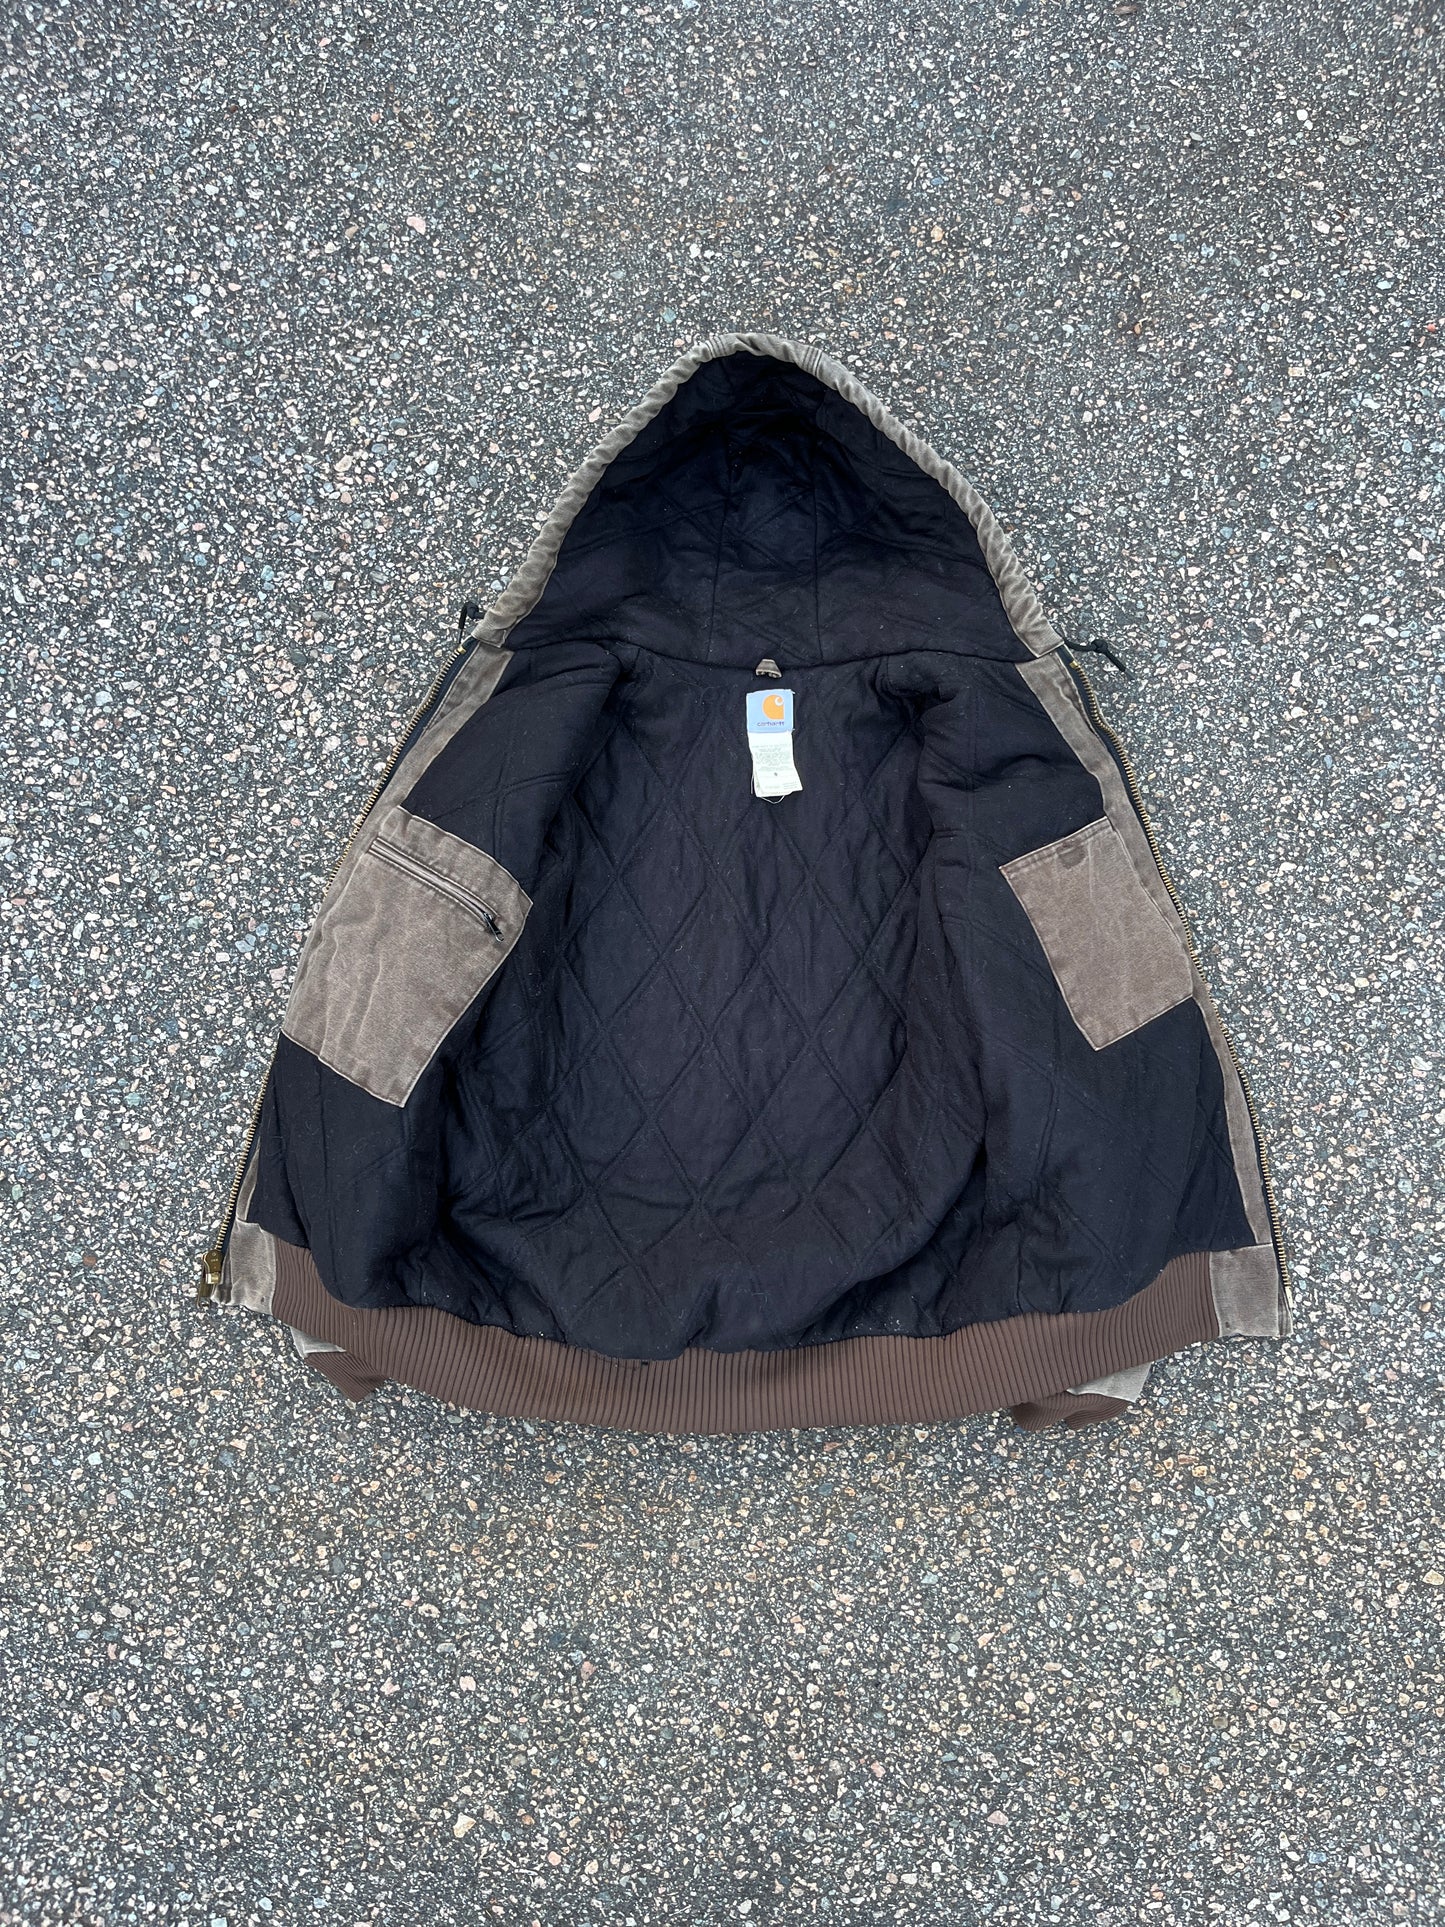 Faded Chestnut Brown Carhartt Active Jacket - Medium